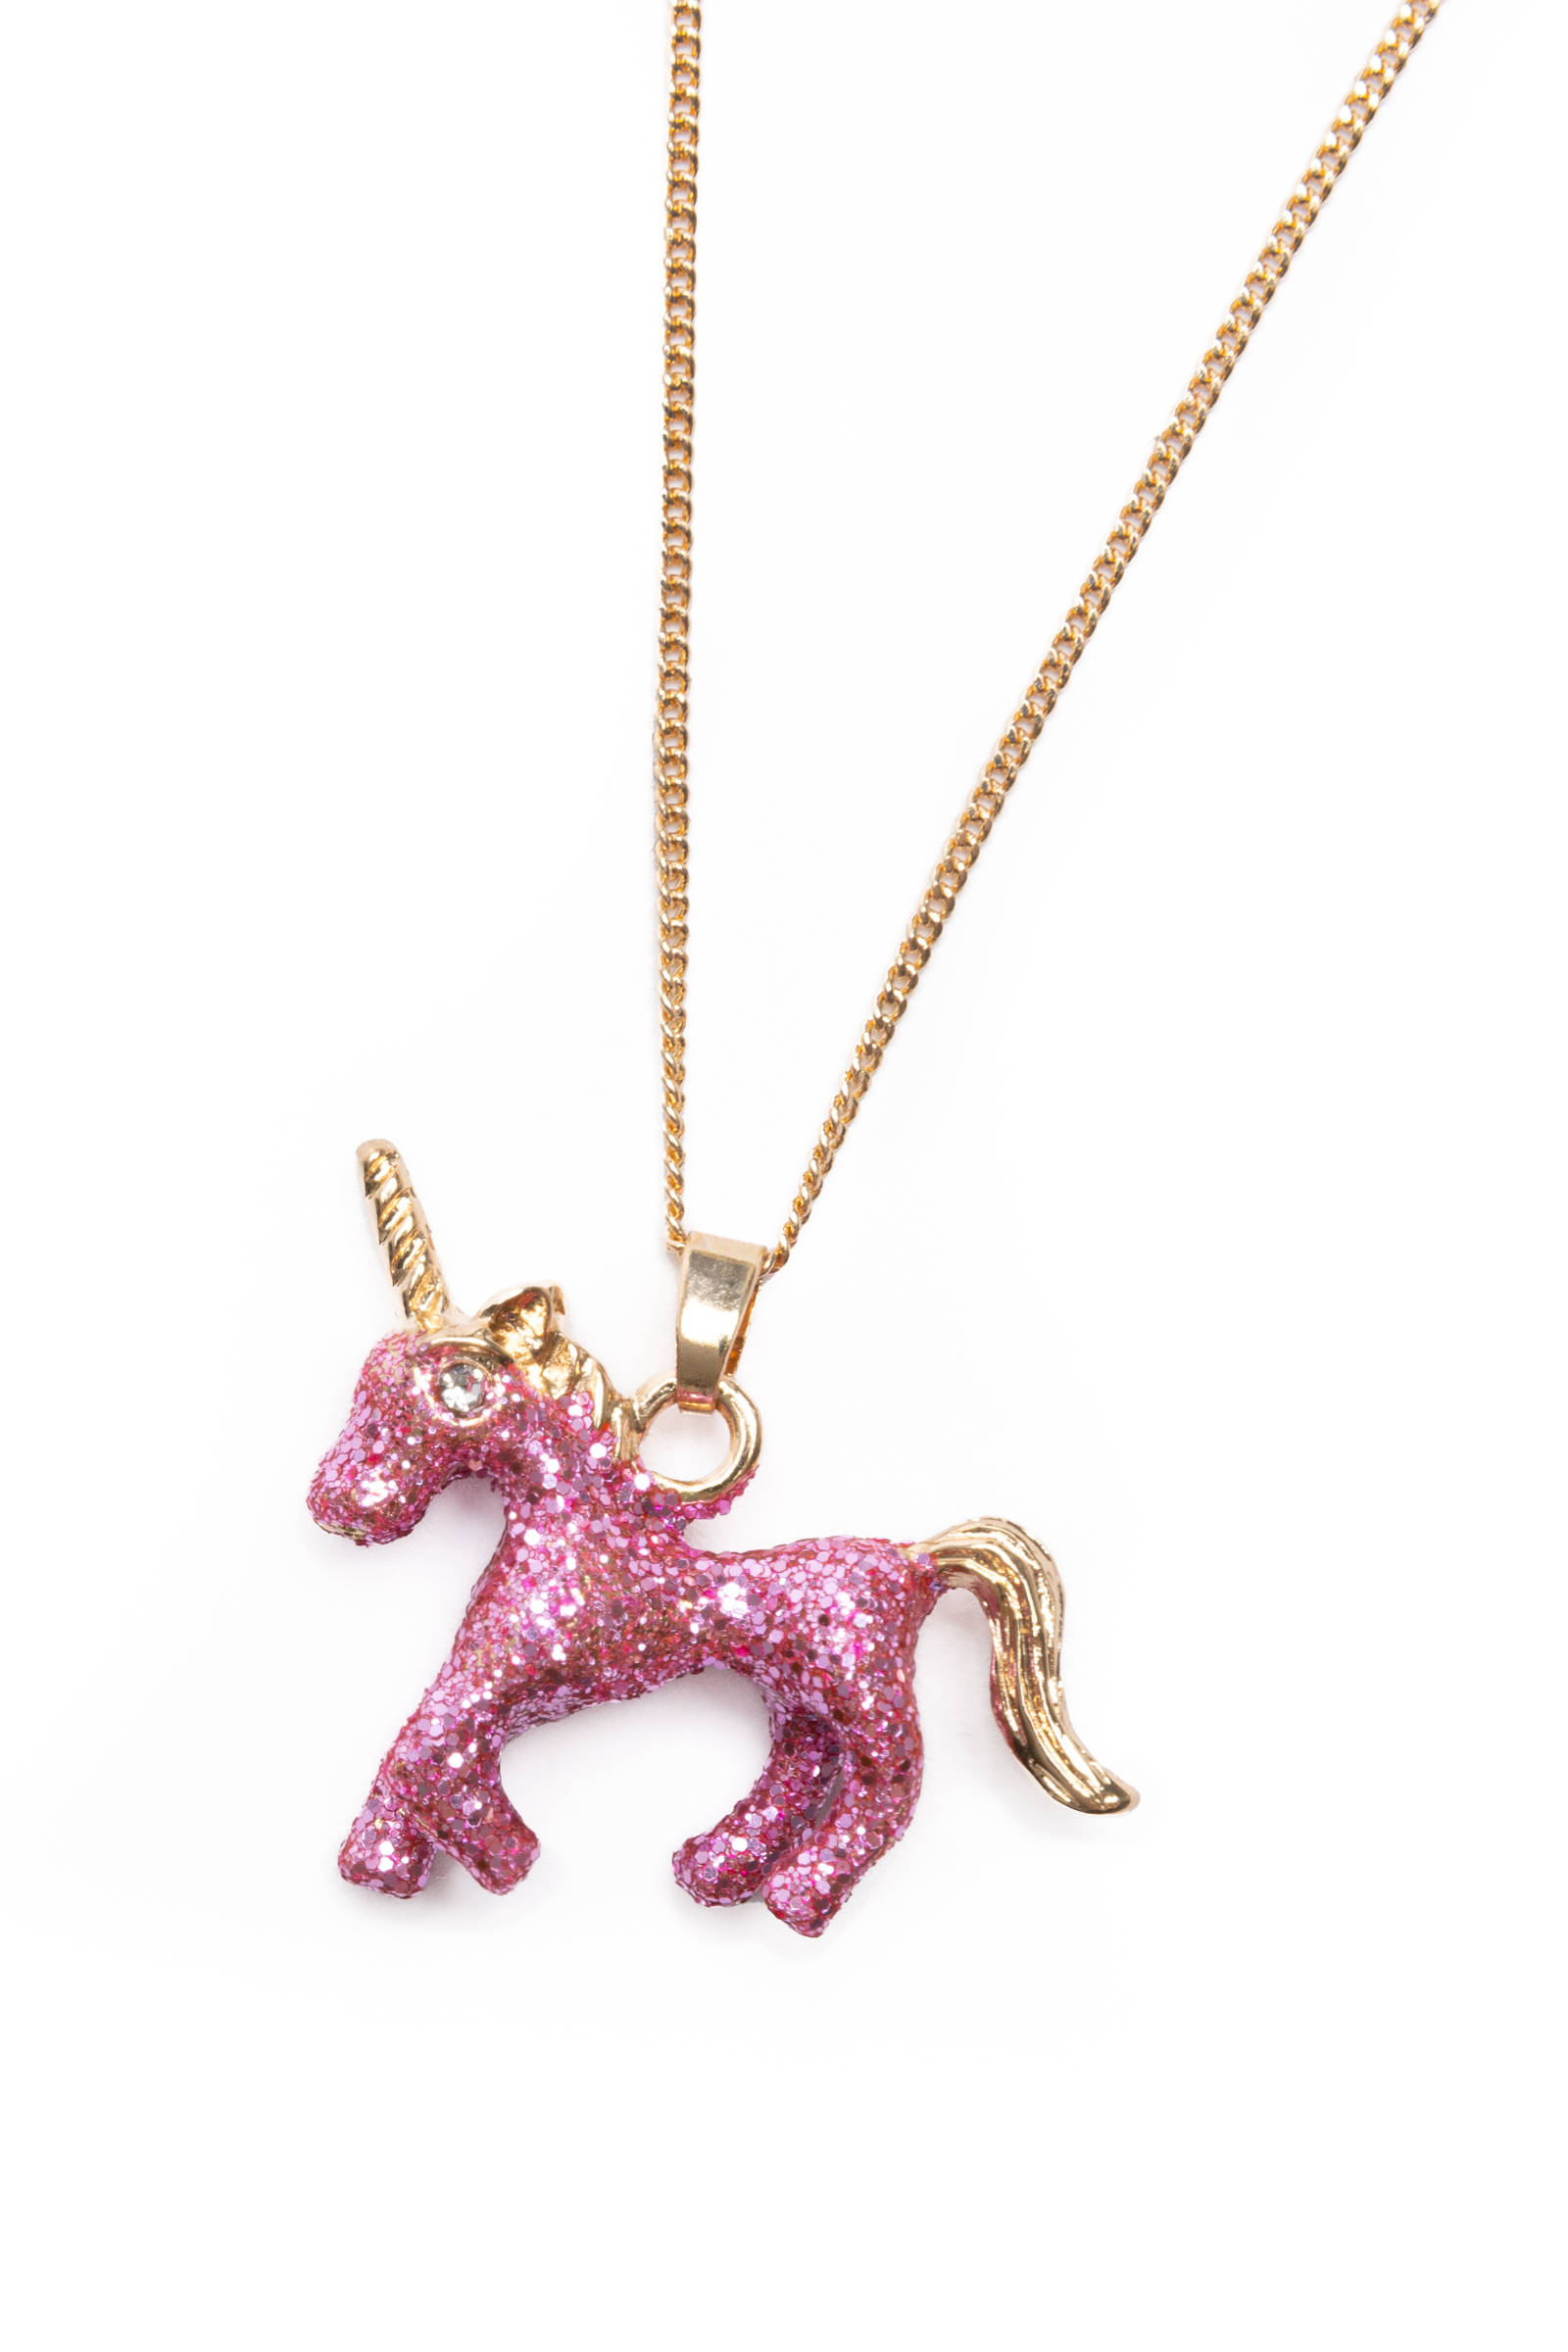 14K Yellow Gold Unicorn Pendant Necklace Polished Shiny on Rolo Chain –  unicornj